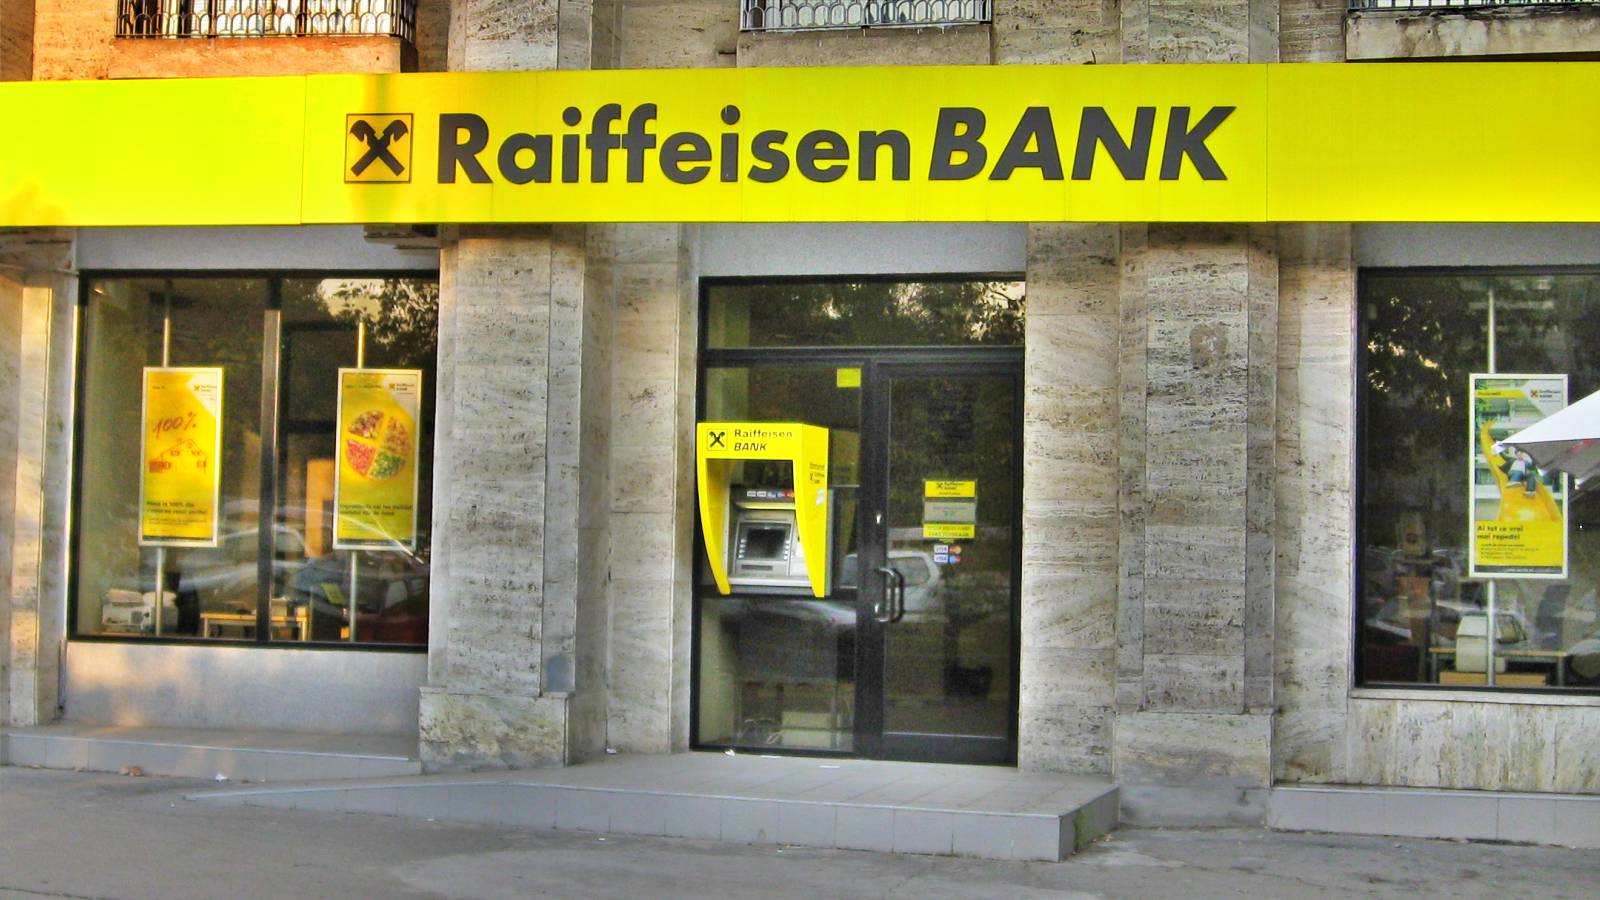 Raiffeisen Bank LET OP Bericht dat klanten moeten weten